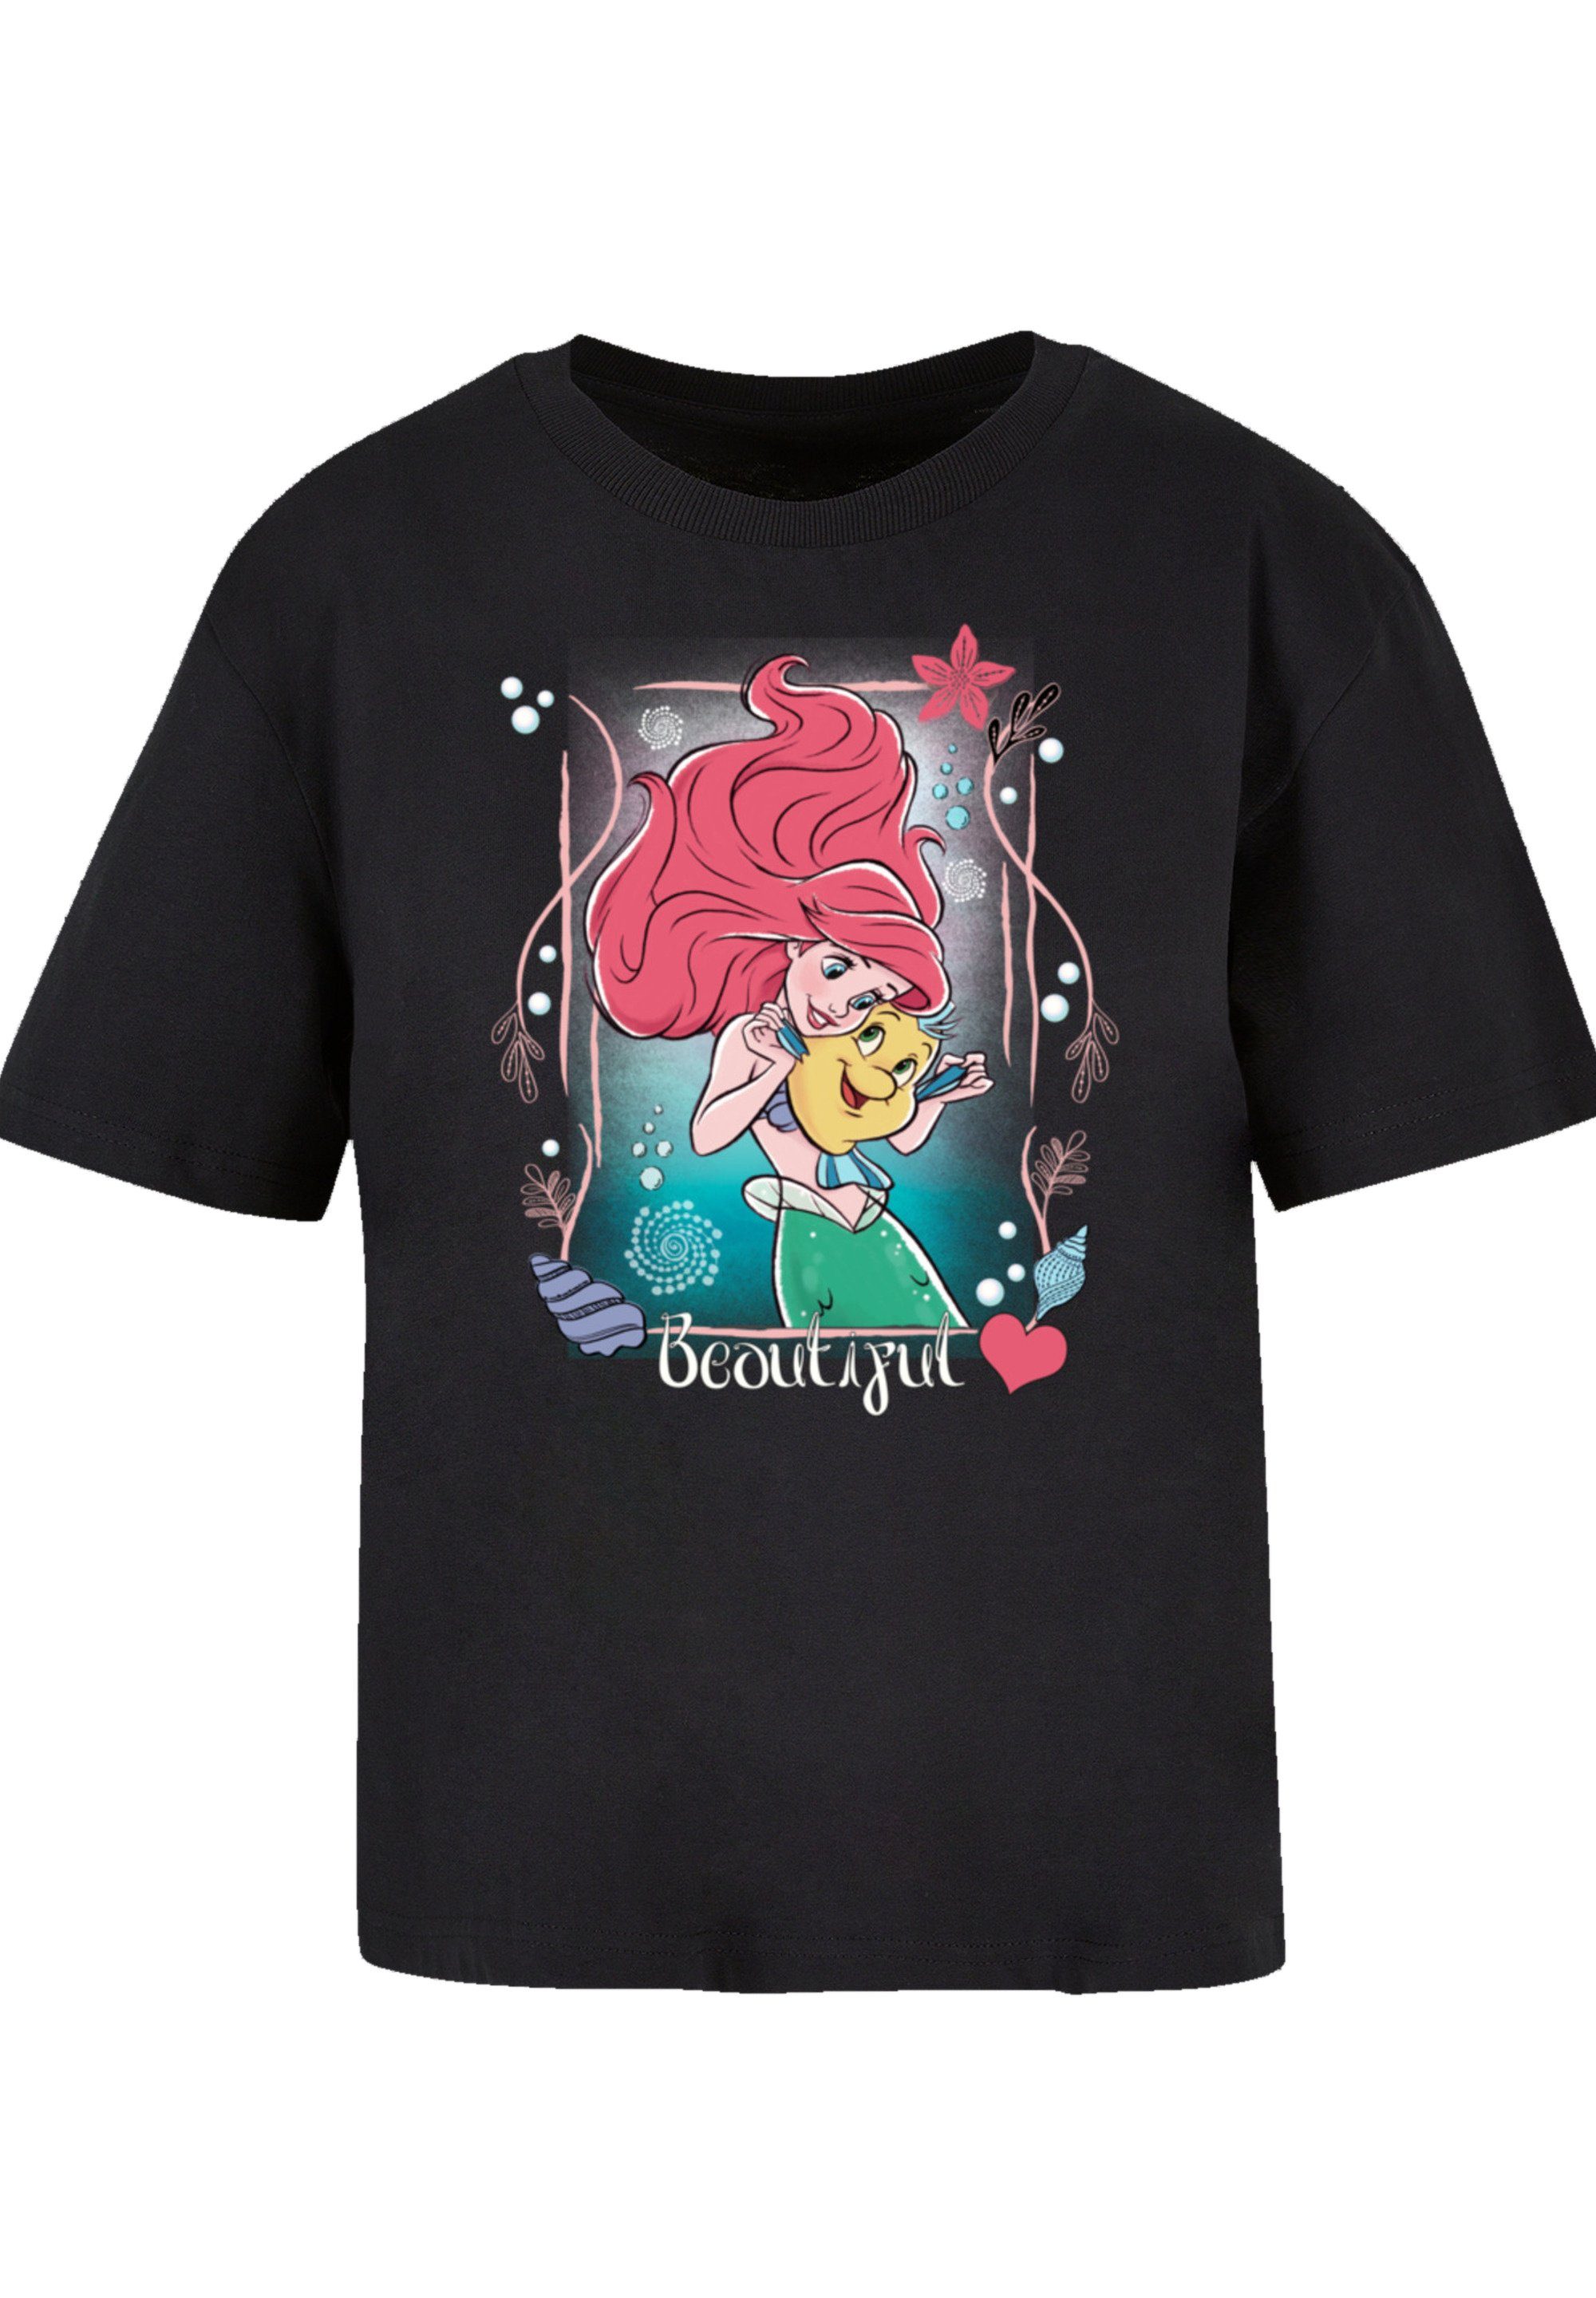 die Prinzessin T-Shirt Qualität, kombinierbar Disney Arielle Meerjungfrau Komfortabel F4NT4STIC und vielseitig Premium